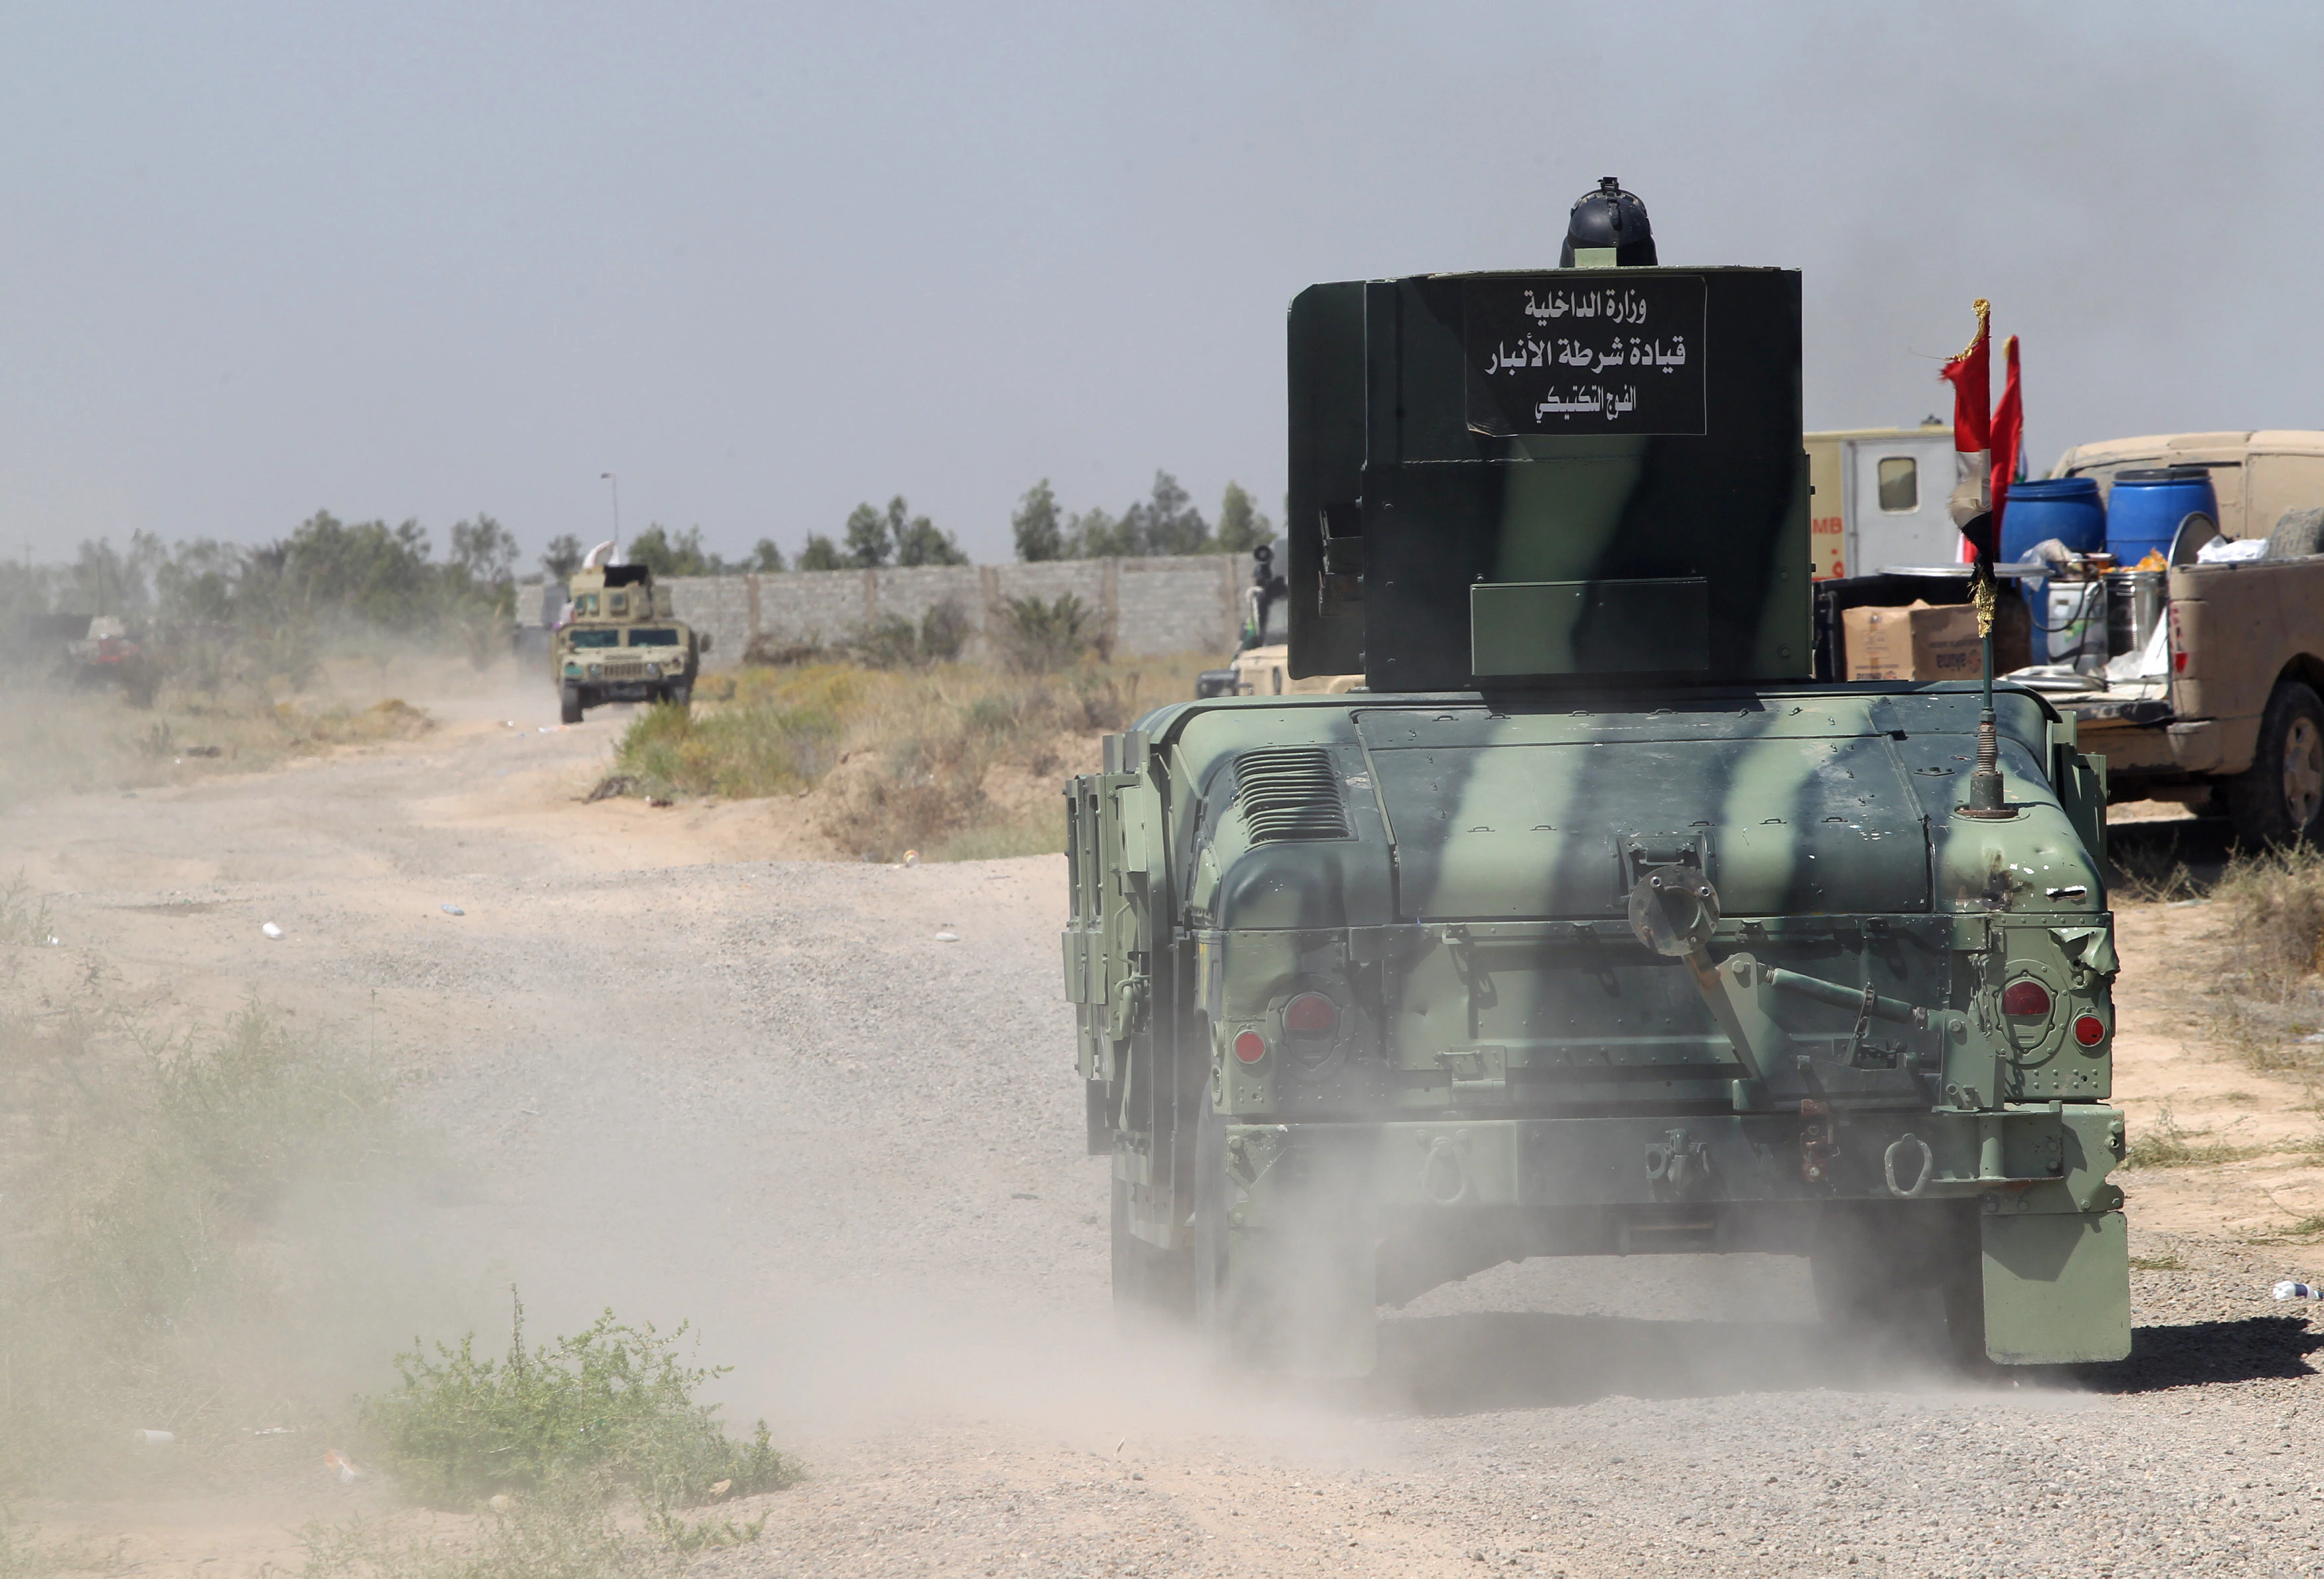 Vehículos militares del ejército iraquí han sido vistos cerca de Faluya